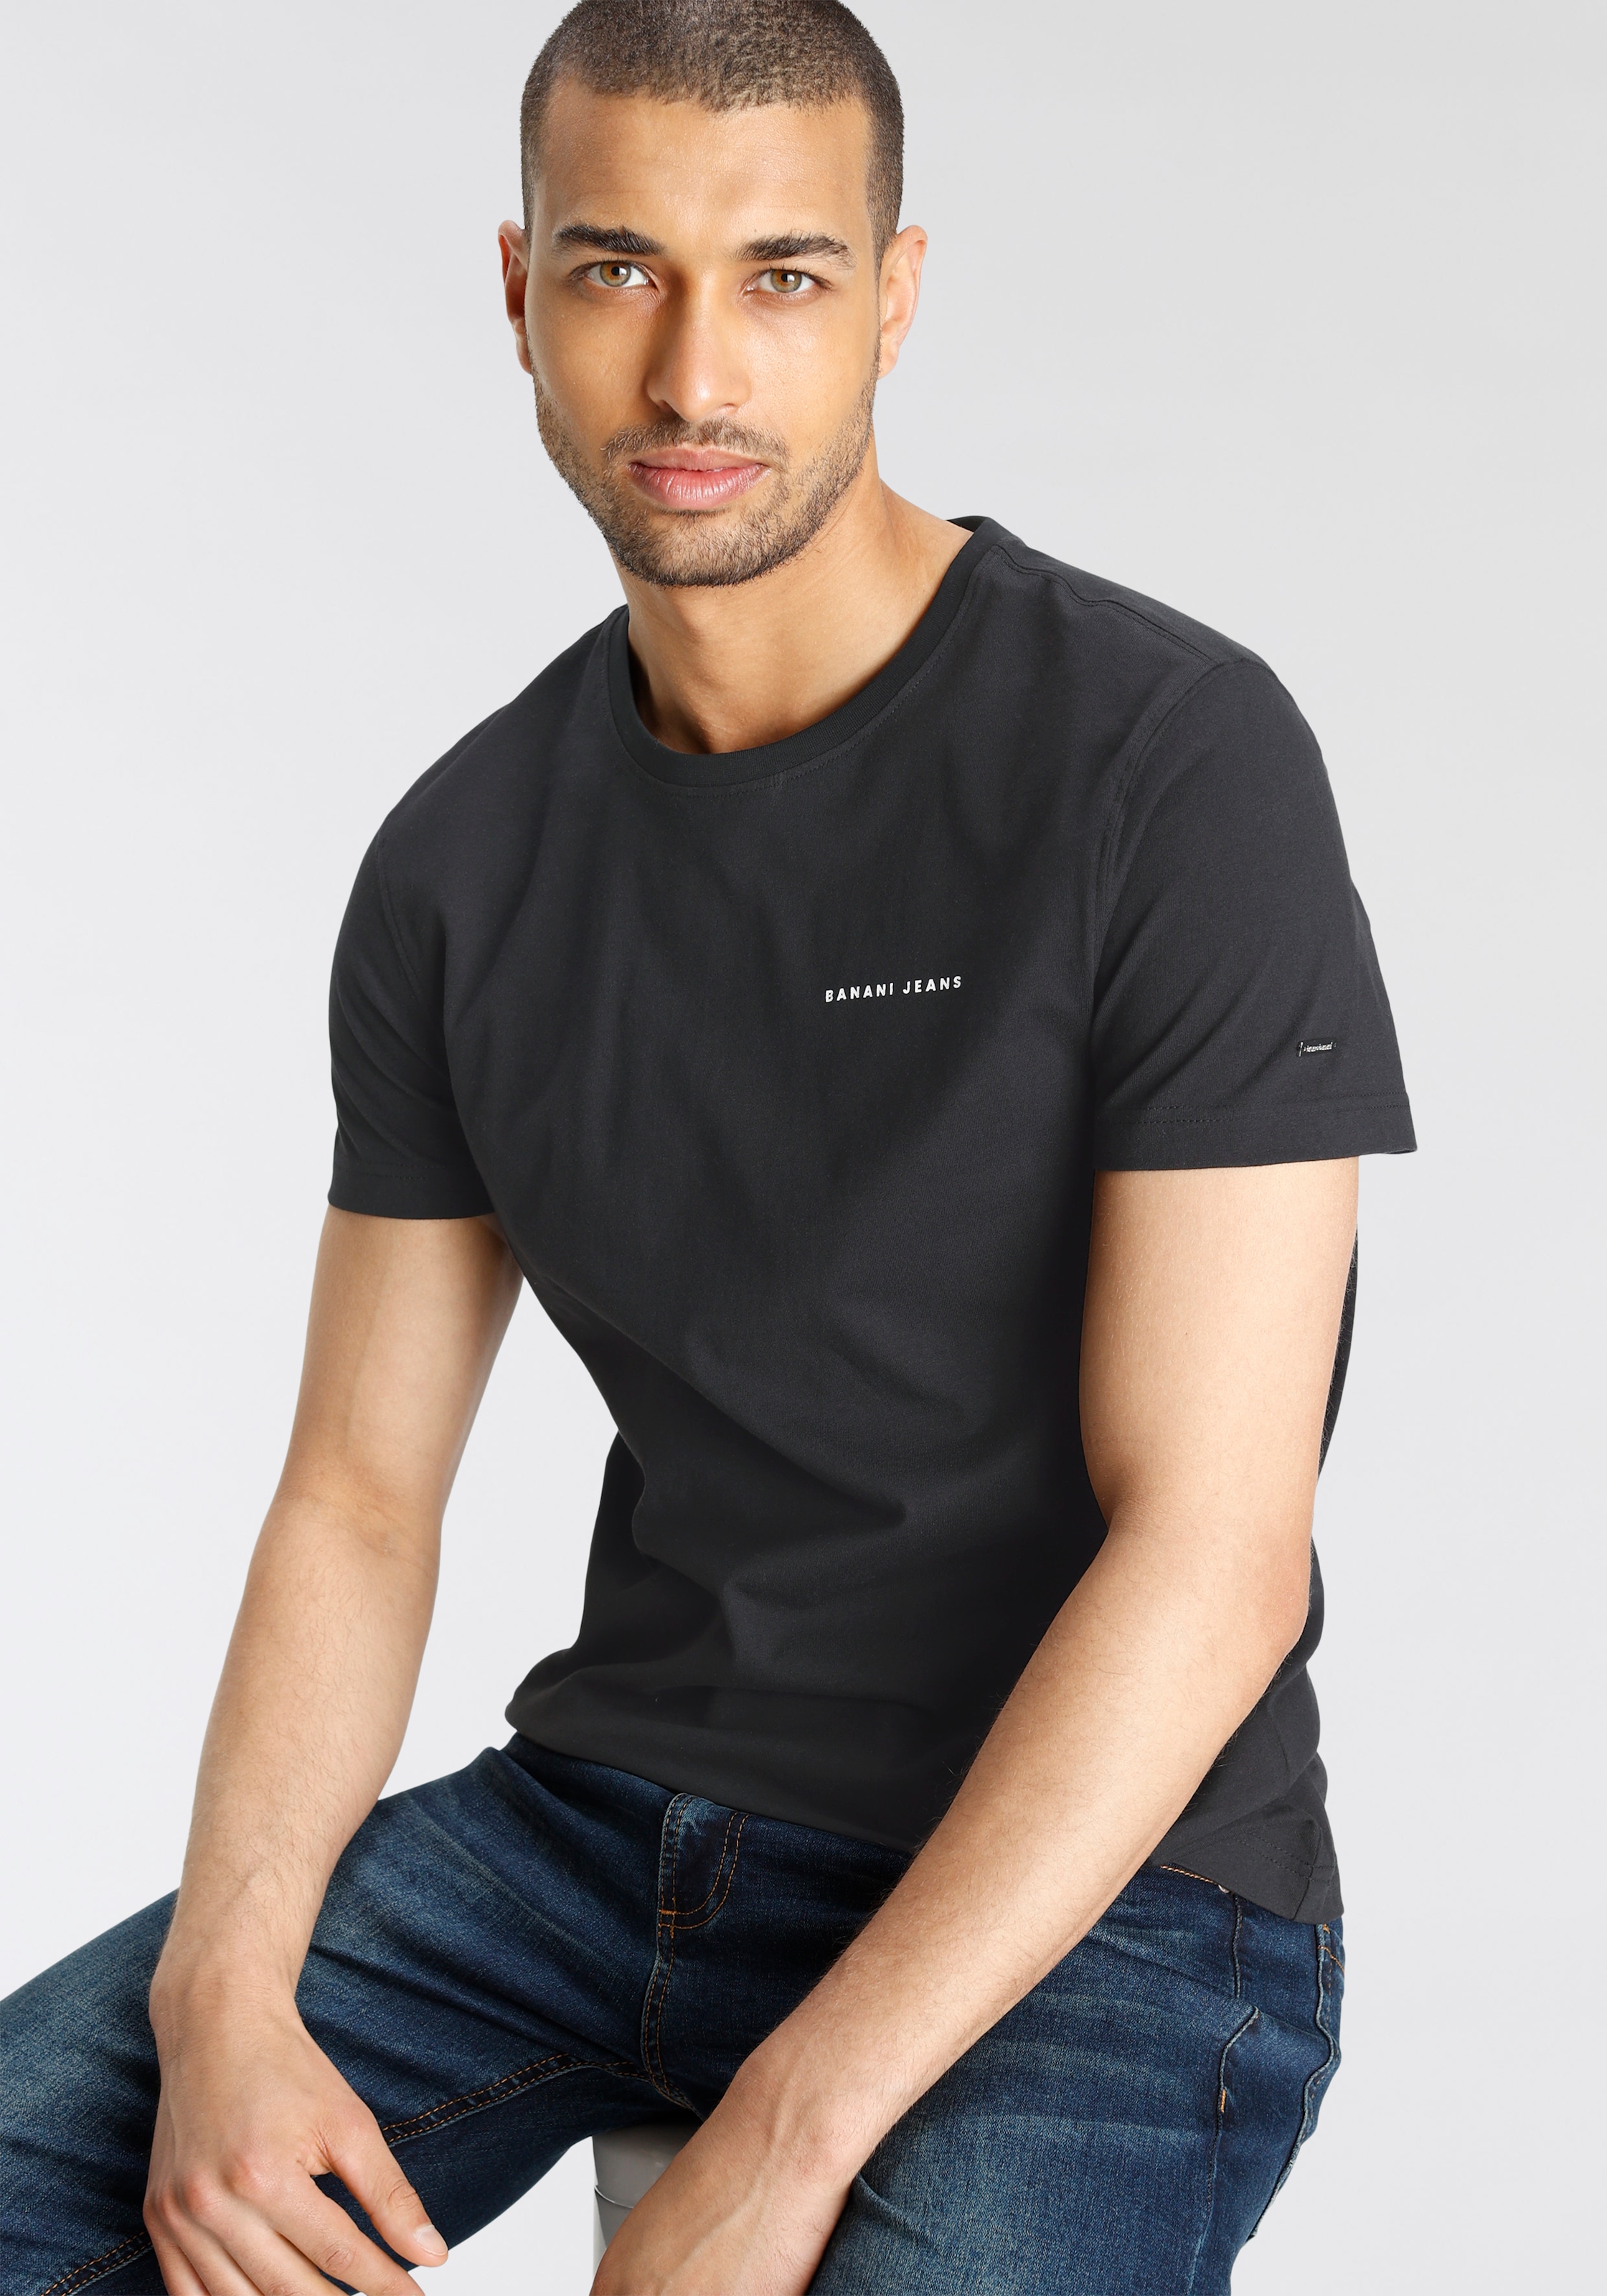 T-Shirt, Banani OTTO coolem Bruno online mit bei kaufen Rückenprint